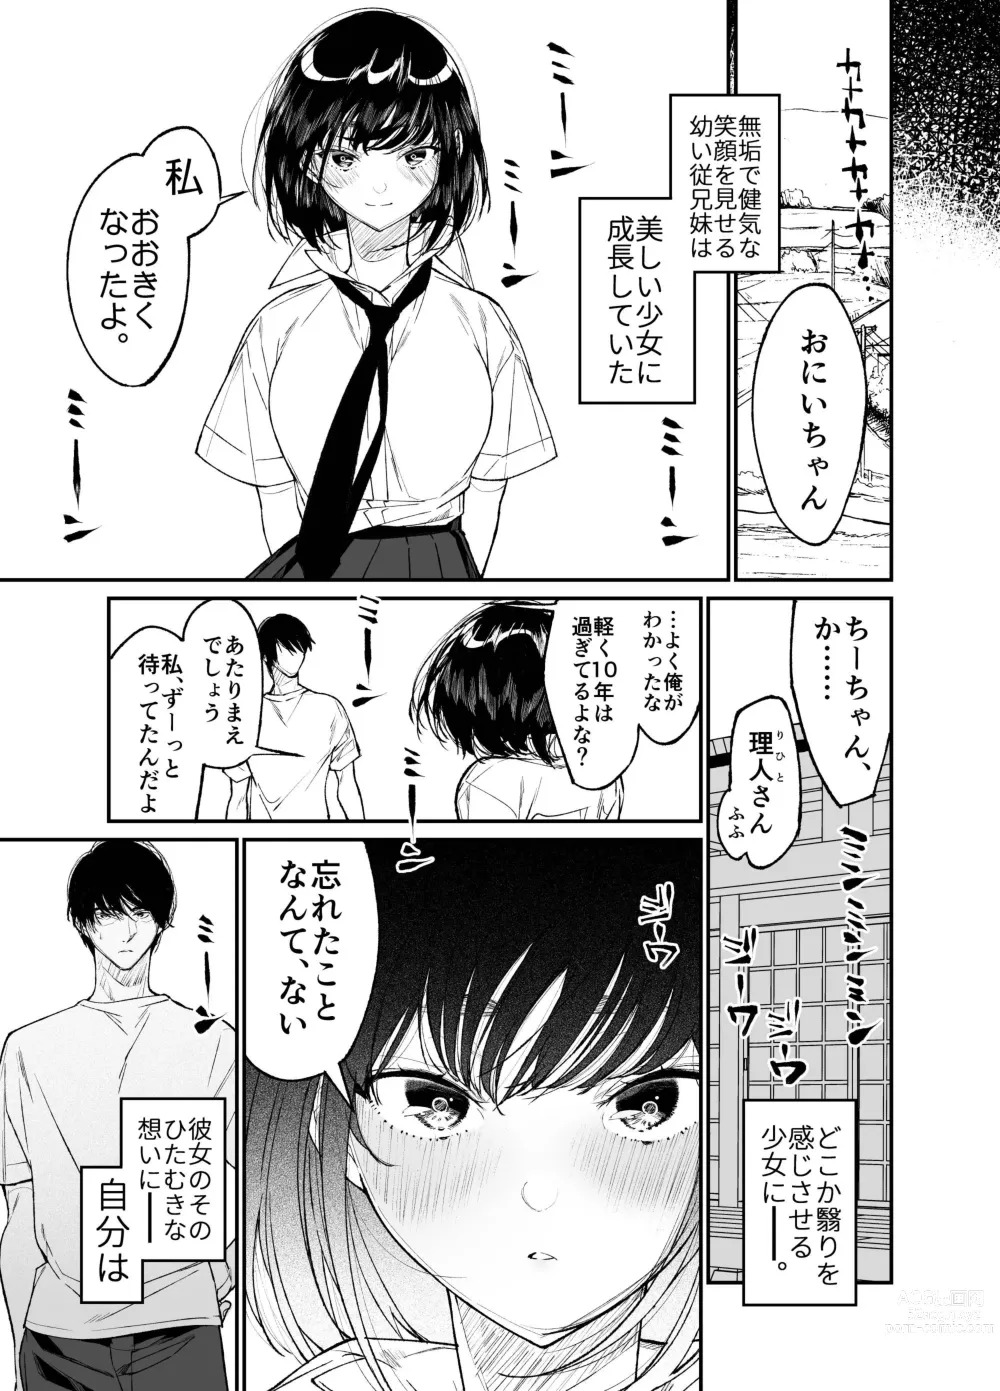 Page 7 of doujinshi Natsu, Shoujo wa Tonde, Hi ni Iru.